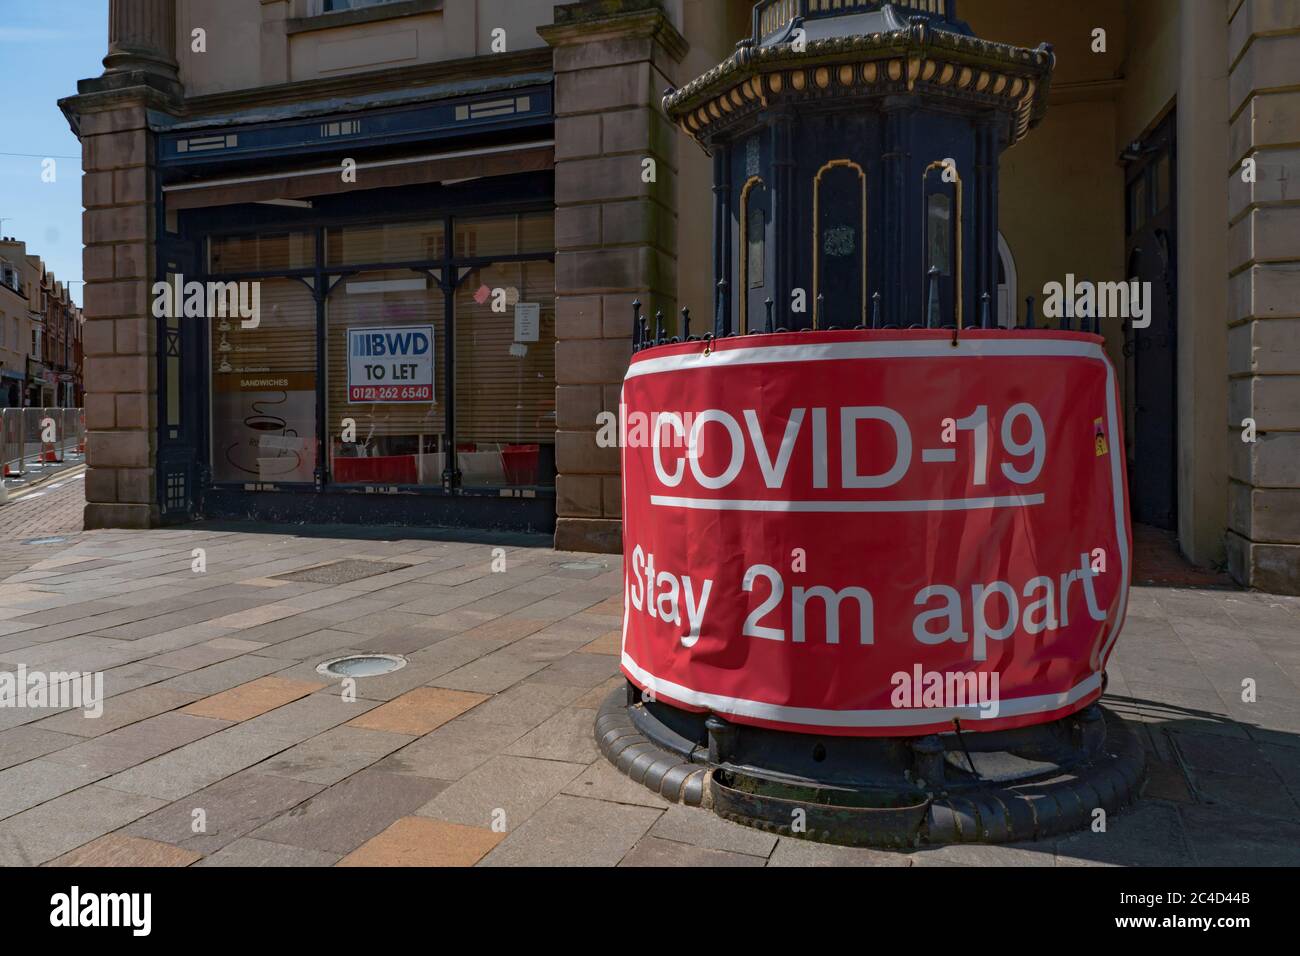 Grand panneau d'avertissement rouge Covid-19 à 2 m de distance, avec des affaires fermées derrière. Stourbridge. West Midlands. ROYAUME-UNI Banque D'Images